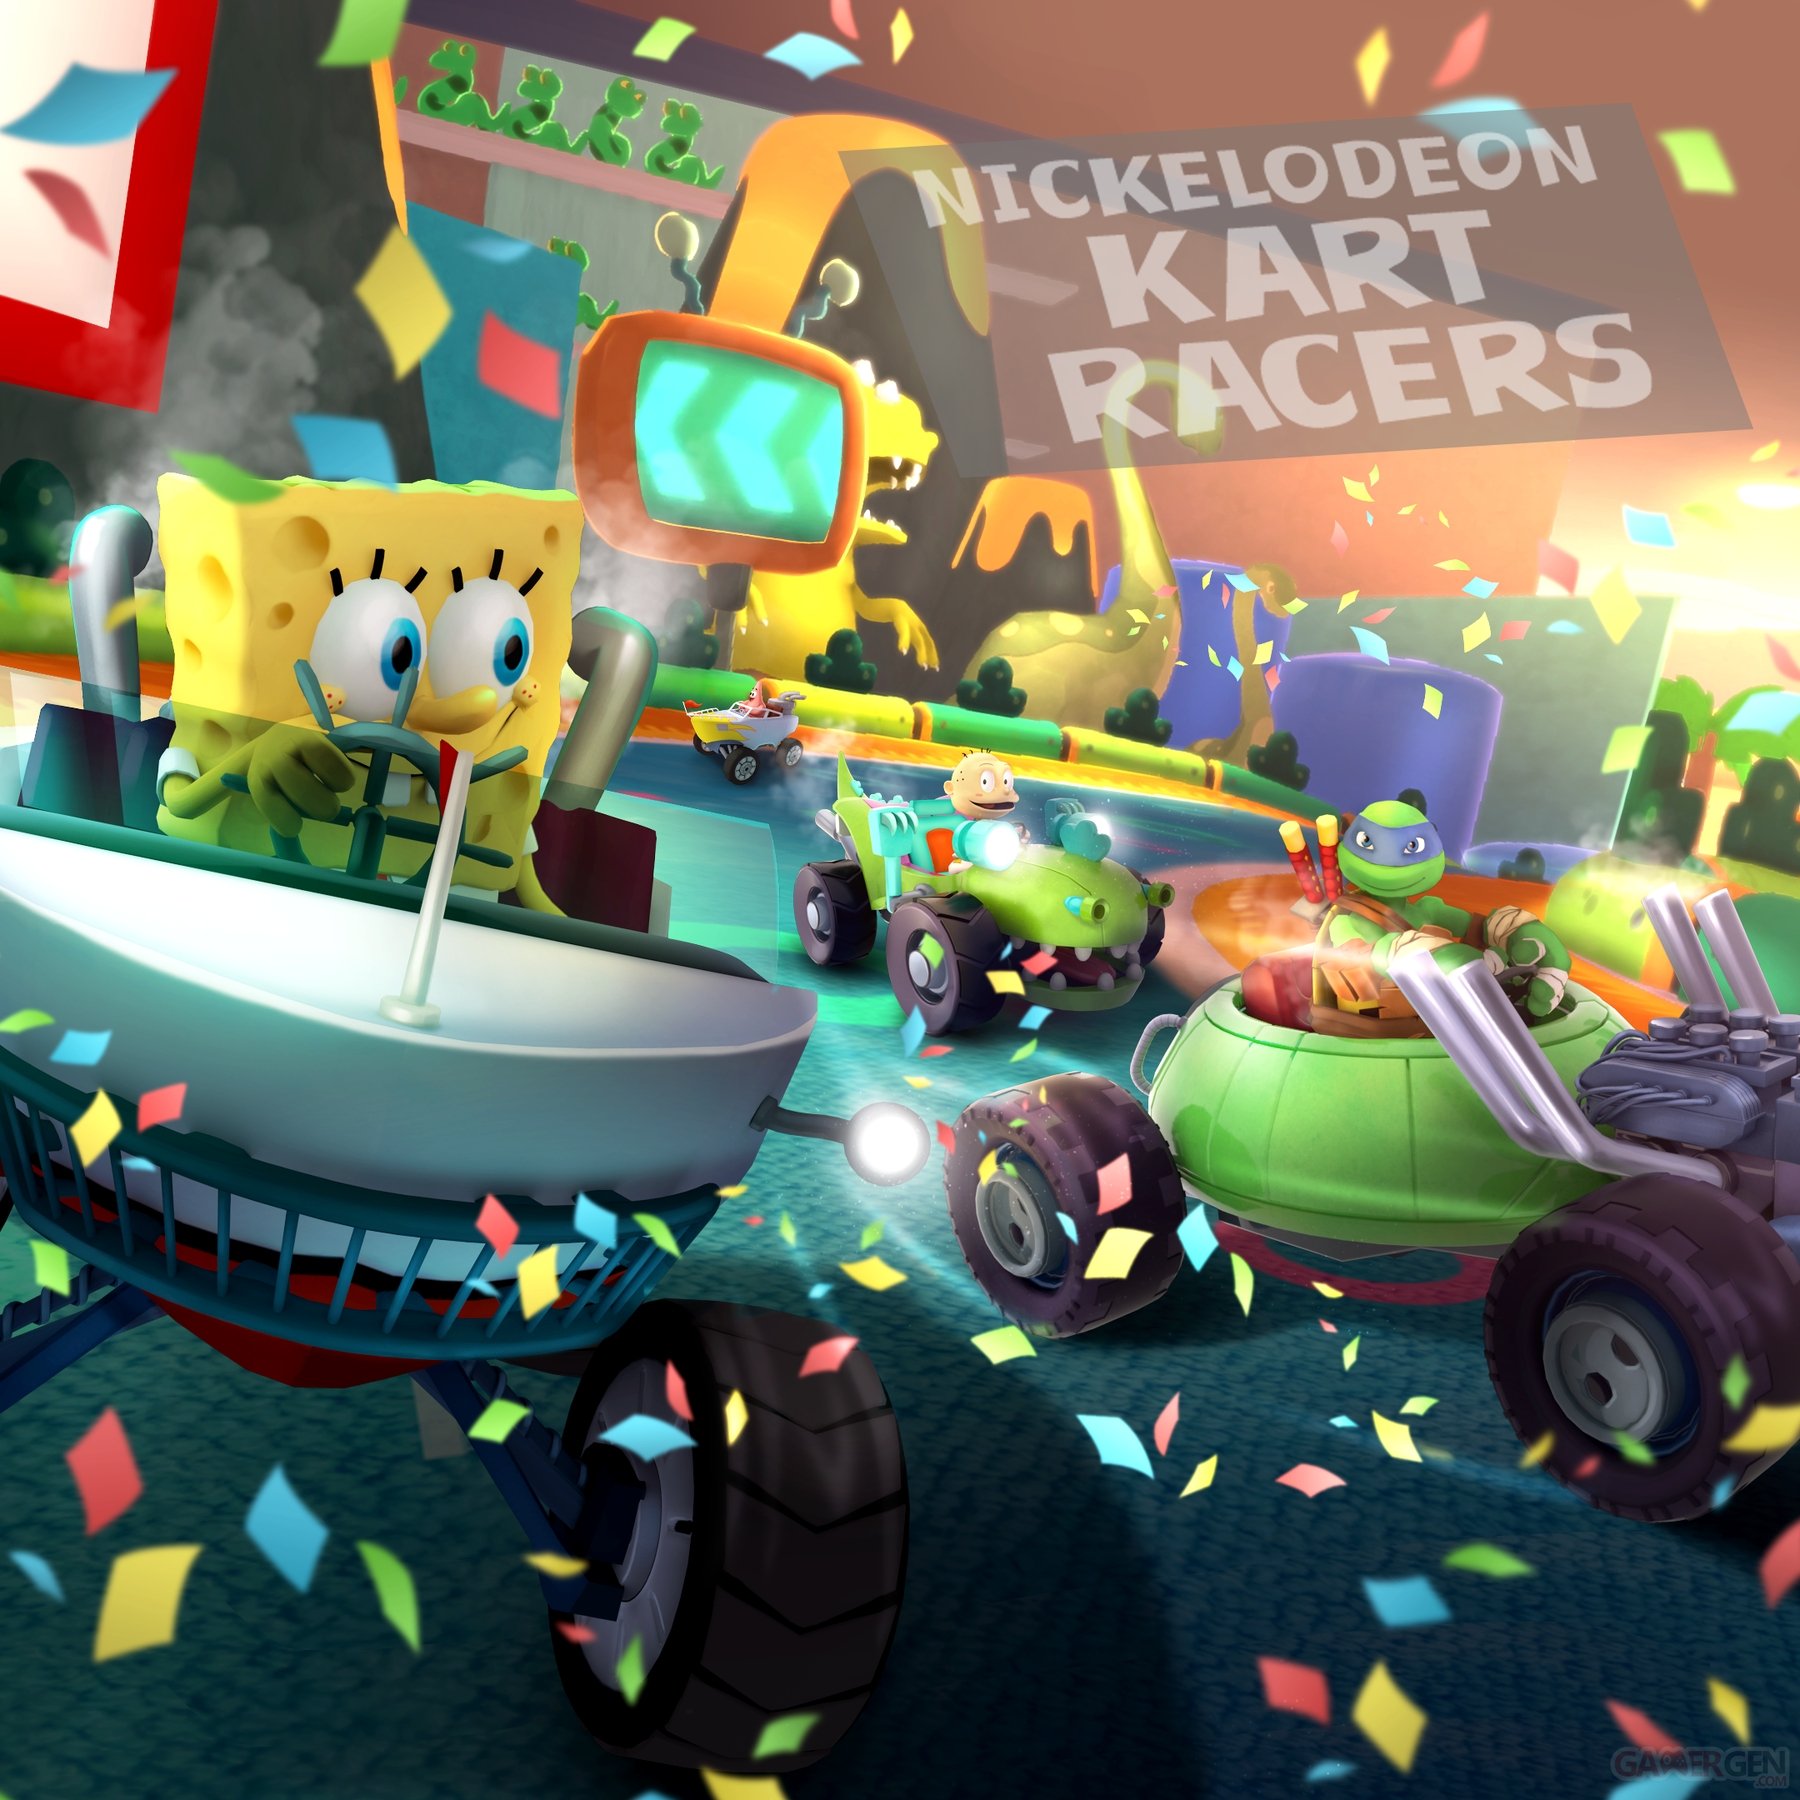 kart racers 3 download